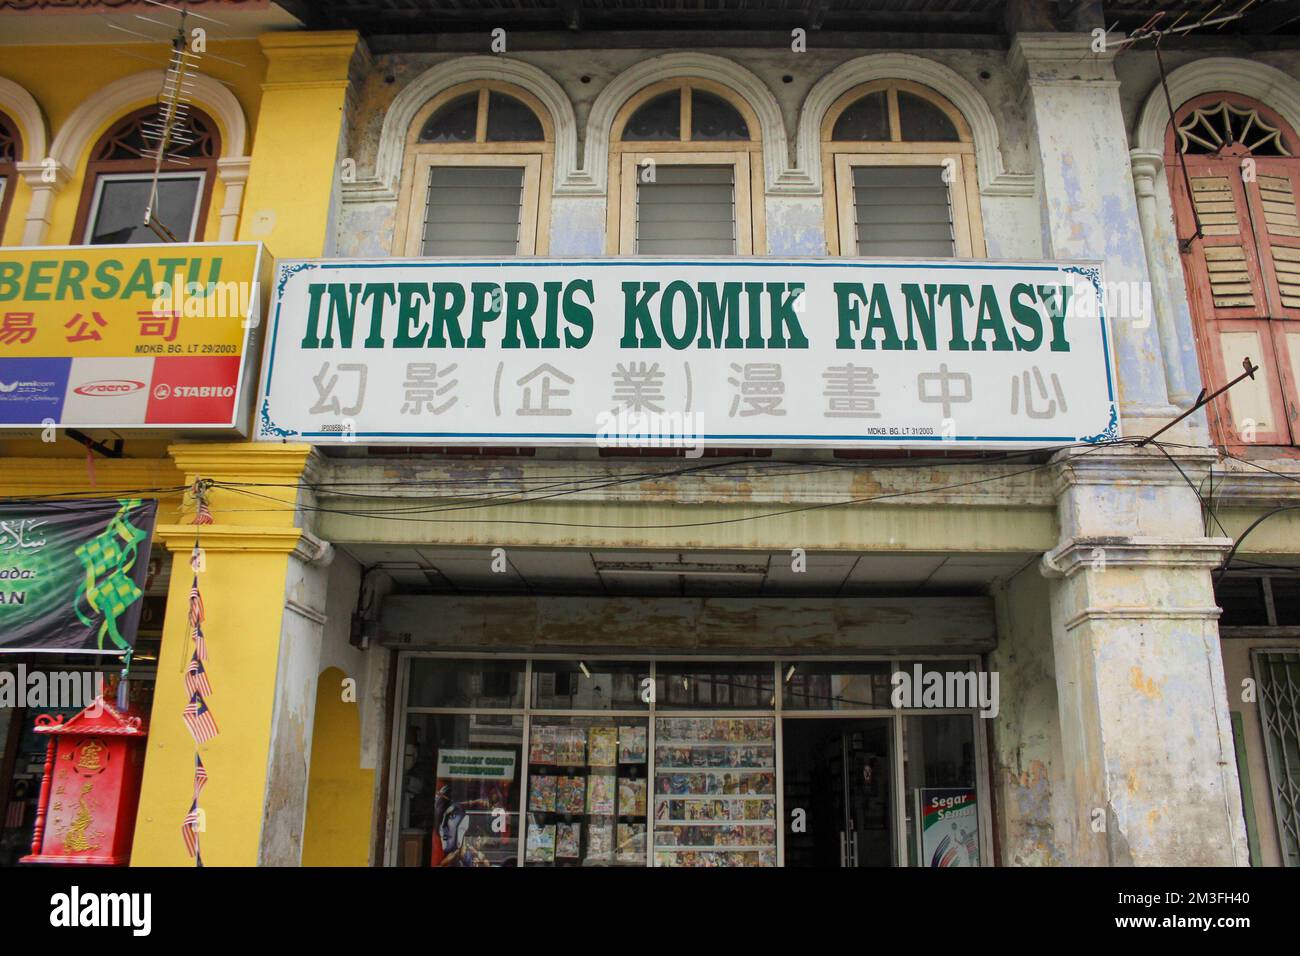 Ipoh, Perak, Malaisie - novembre 2012 : la façade extérieure d'un magasin de bandes dessinées d'époque dans un magasin chinois de la vieille ville d'Ipoh. Banque D'Images